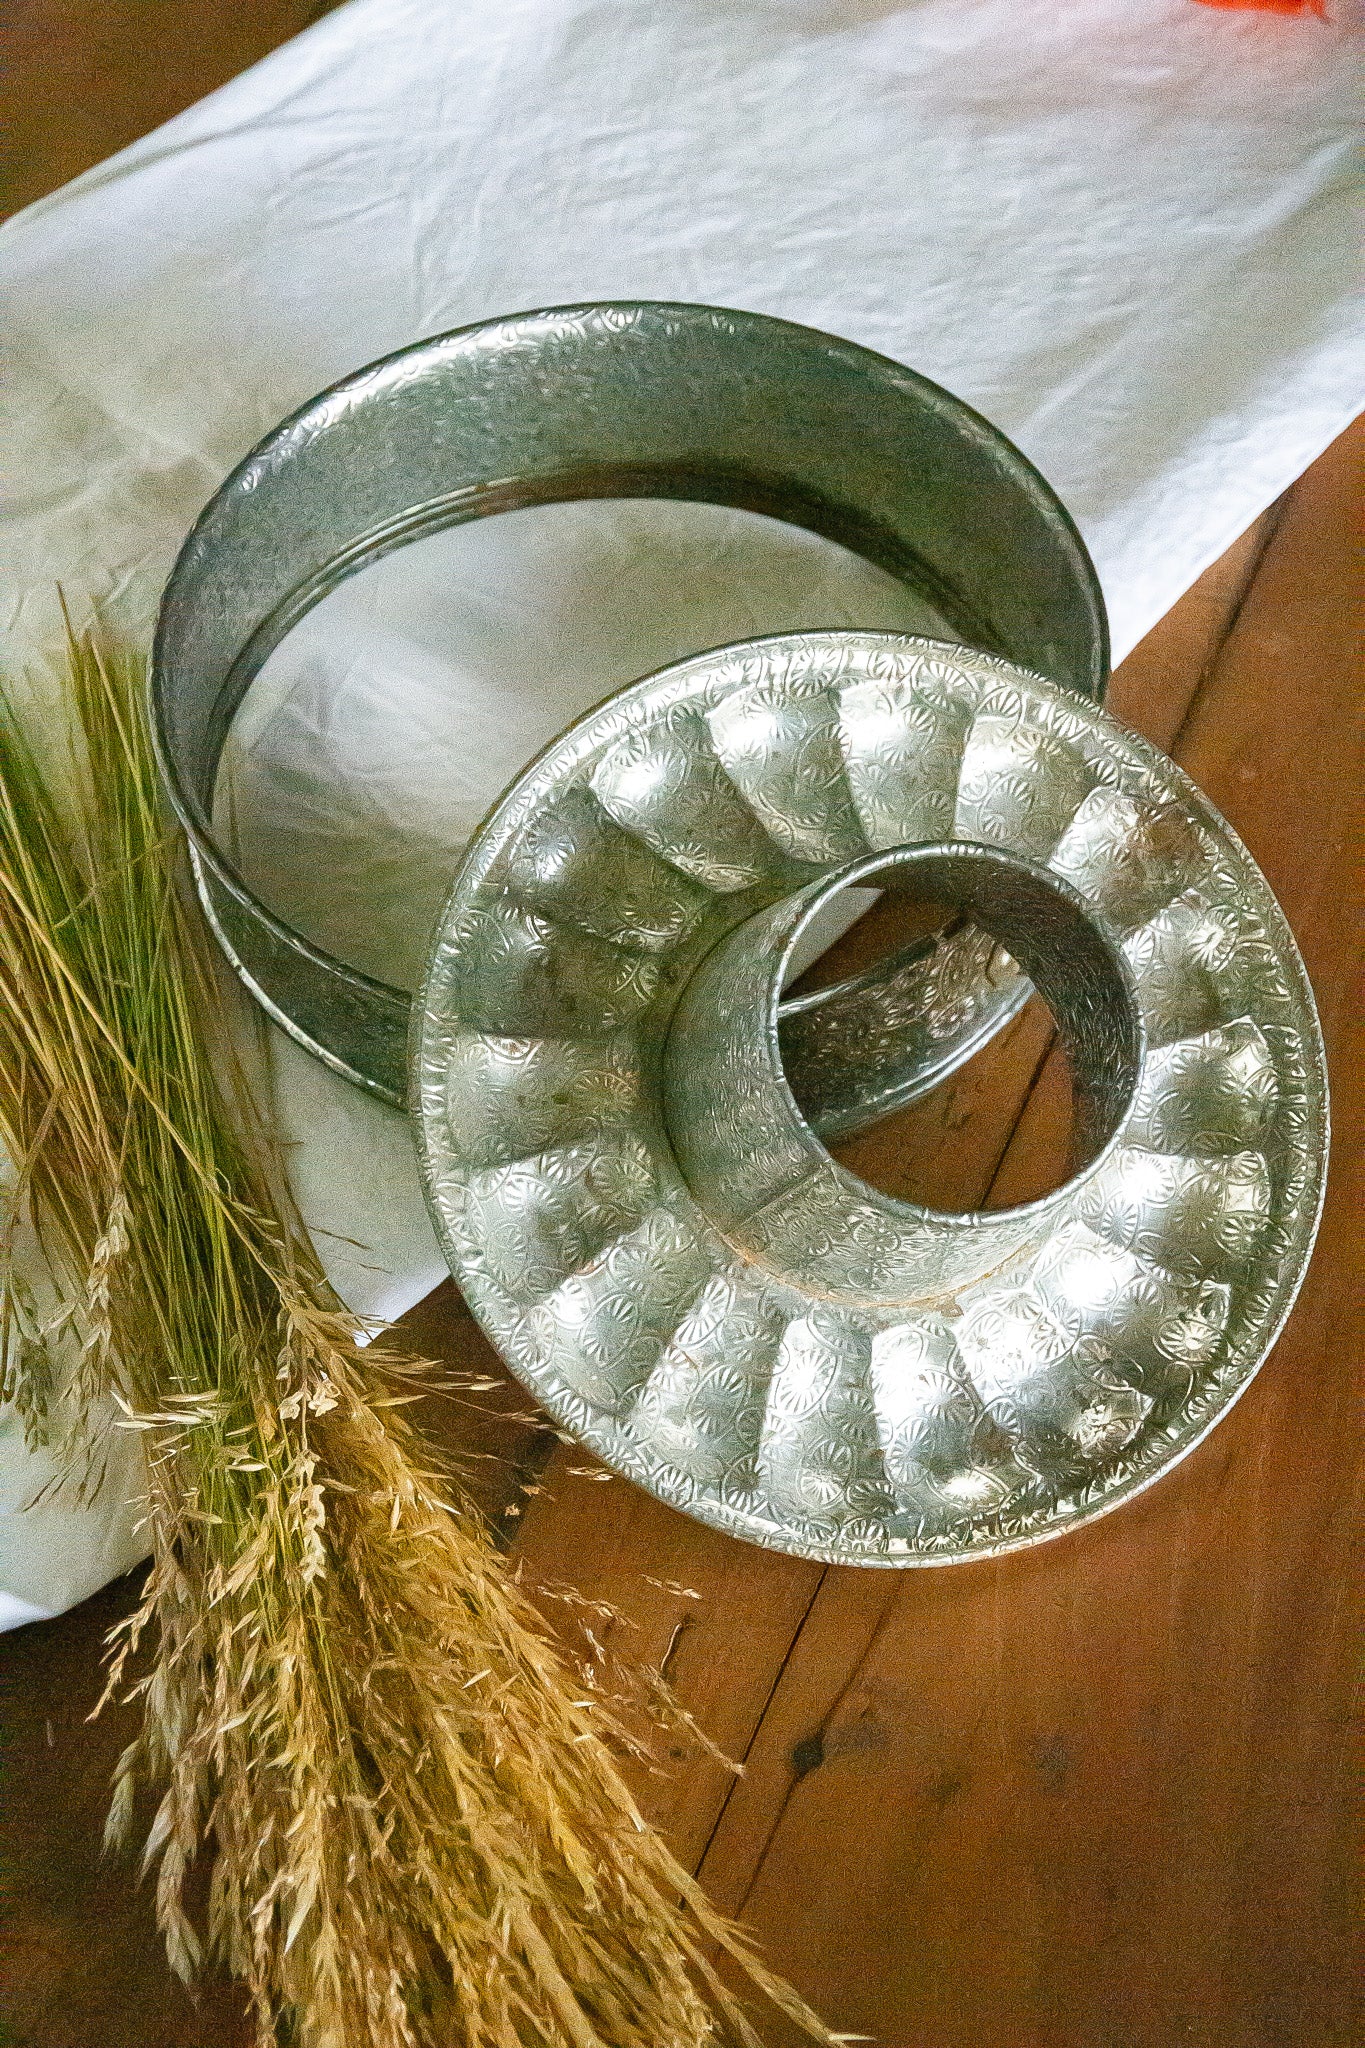 Ancien moule à manqué en métal, décoratif, ne ferme plus parfaitement et possède quelques traces de rouille le rendant inutilisable en cuisine. 